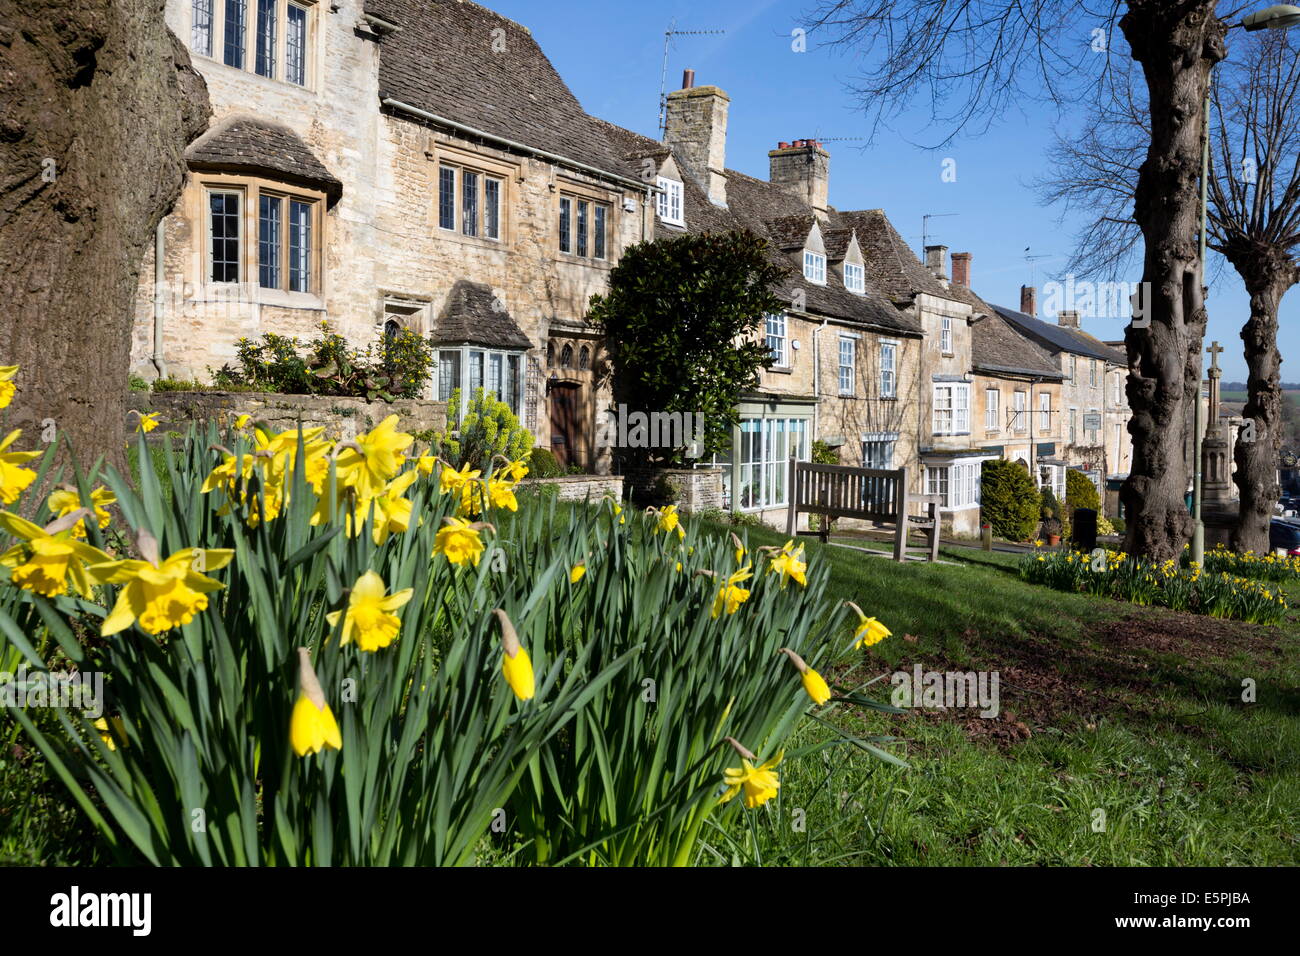 Cotswold chalets le long de la colline avec le printemps, les jonquilles, Burford Cotswolds, Oxfordshire, Angleterre, Royaume-Uni, Europe Banque D'Images